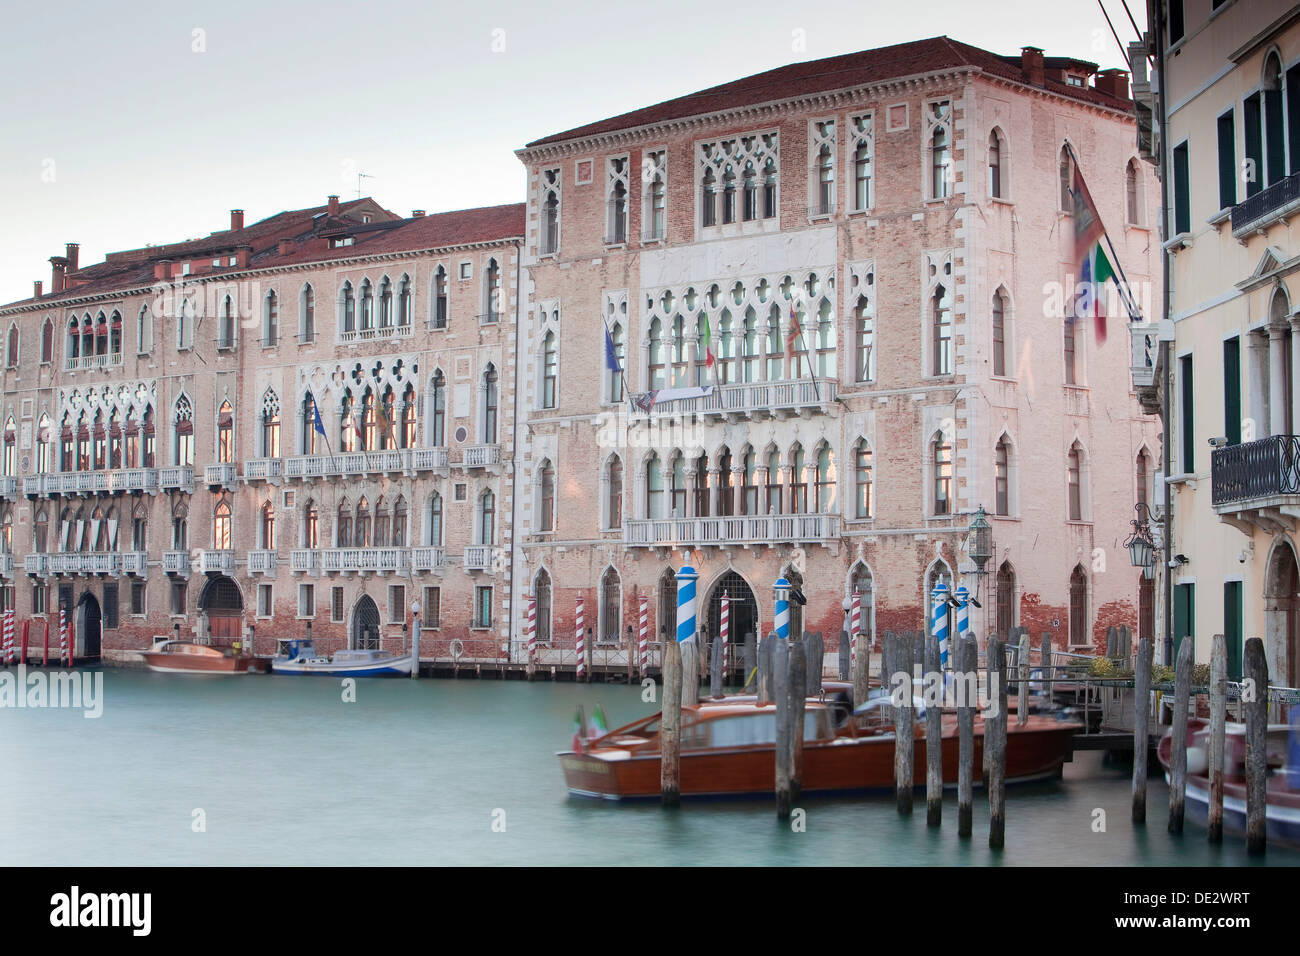 Palazzi, palais sur le grand canal, canal Grande, Venise, Italie, venezien Banque D'Images